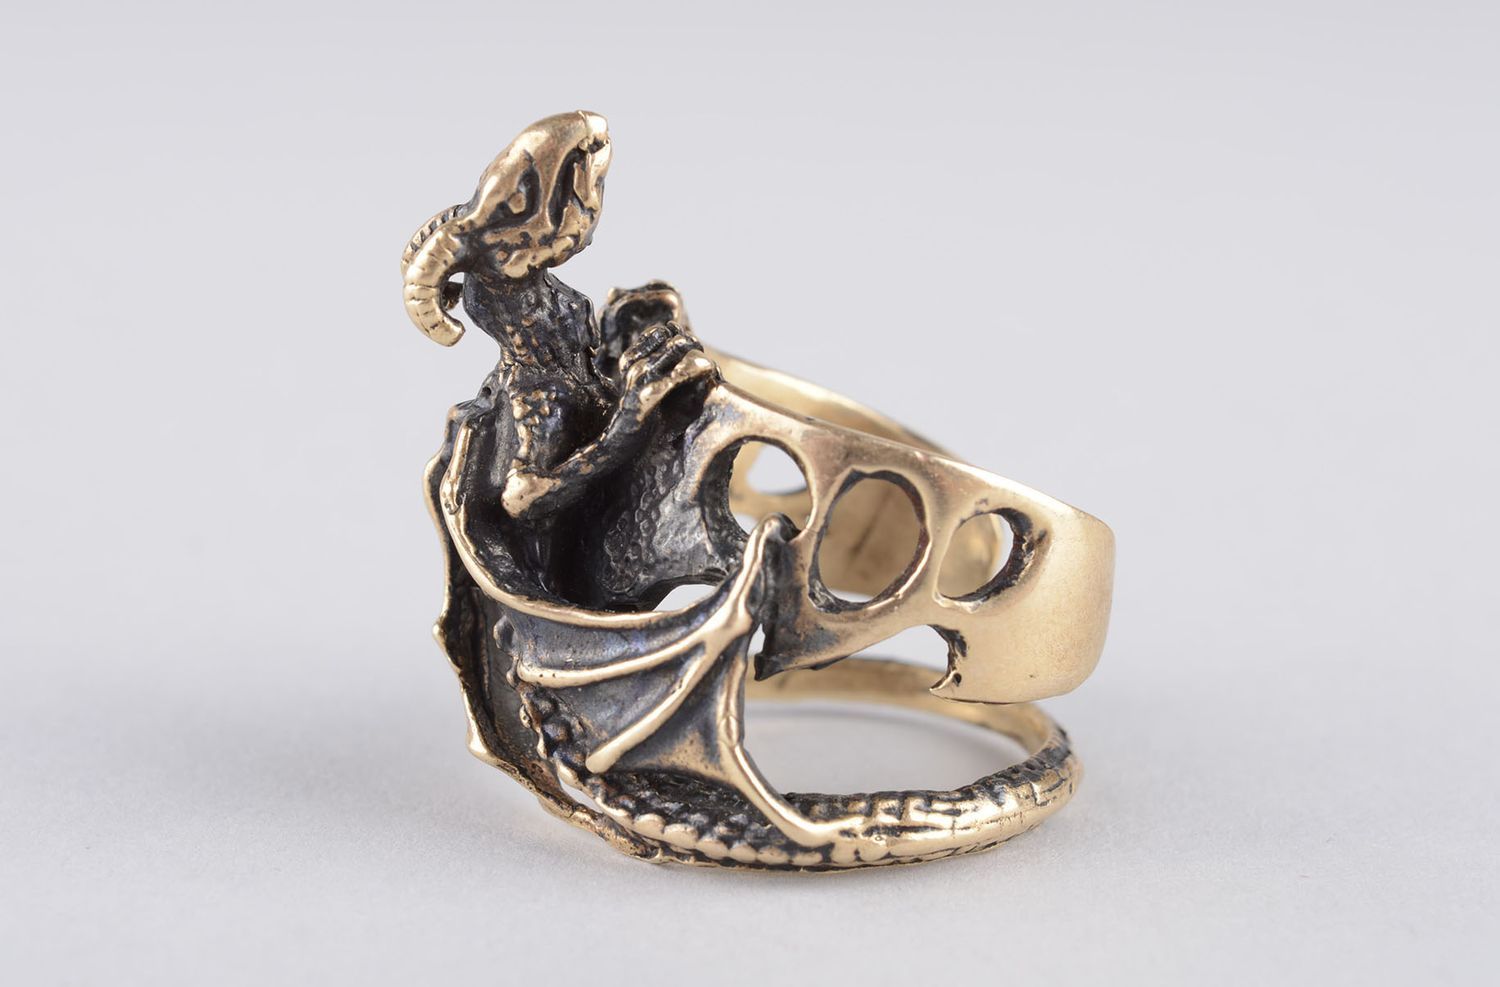 Handmade bronze jewelry bronze ring for men dragon ring handmade jewelry photo 10